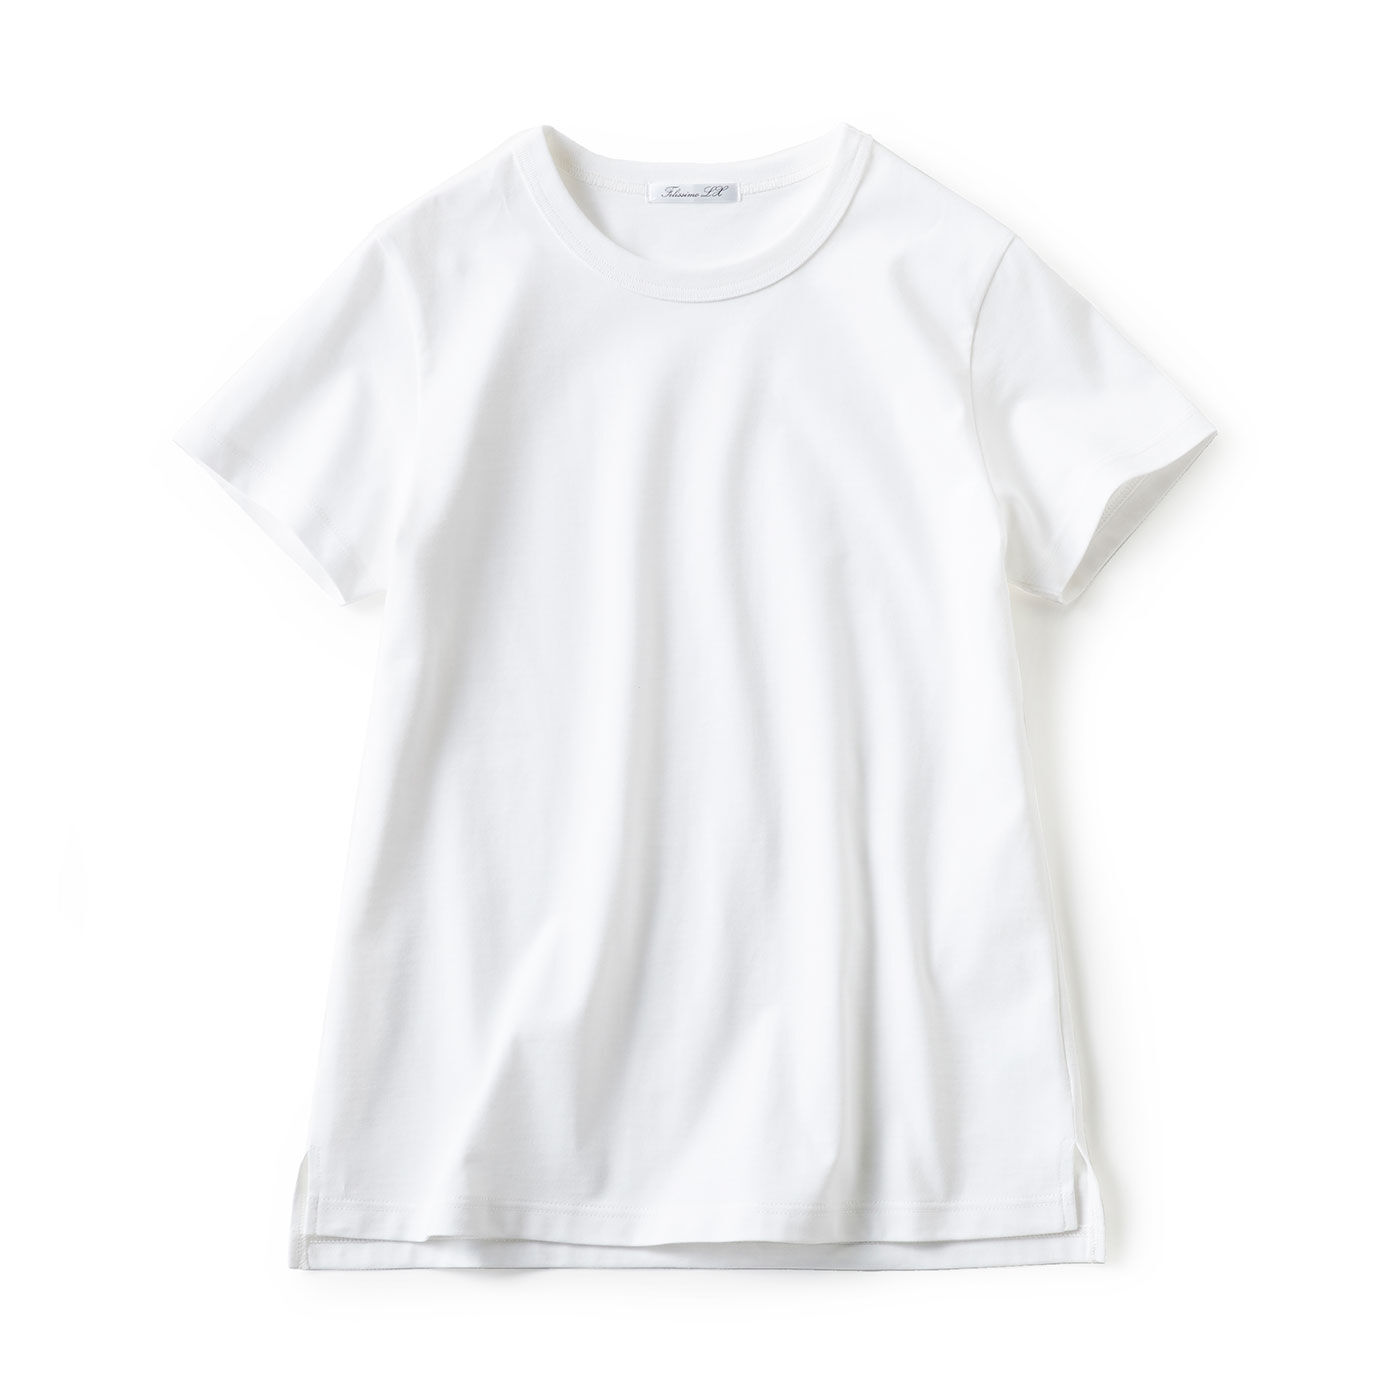 FelissimoLX|LX　大人の今が輝く　理想のTシャツ PARTⅡ（ホワイト）|コンパクトに見せながら身体のラインを拾わない絶妙な形とサイズ感で美しいシルエットに仕上げています。